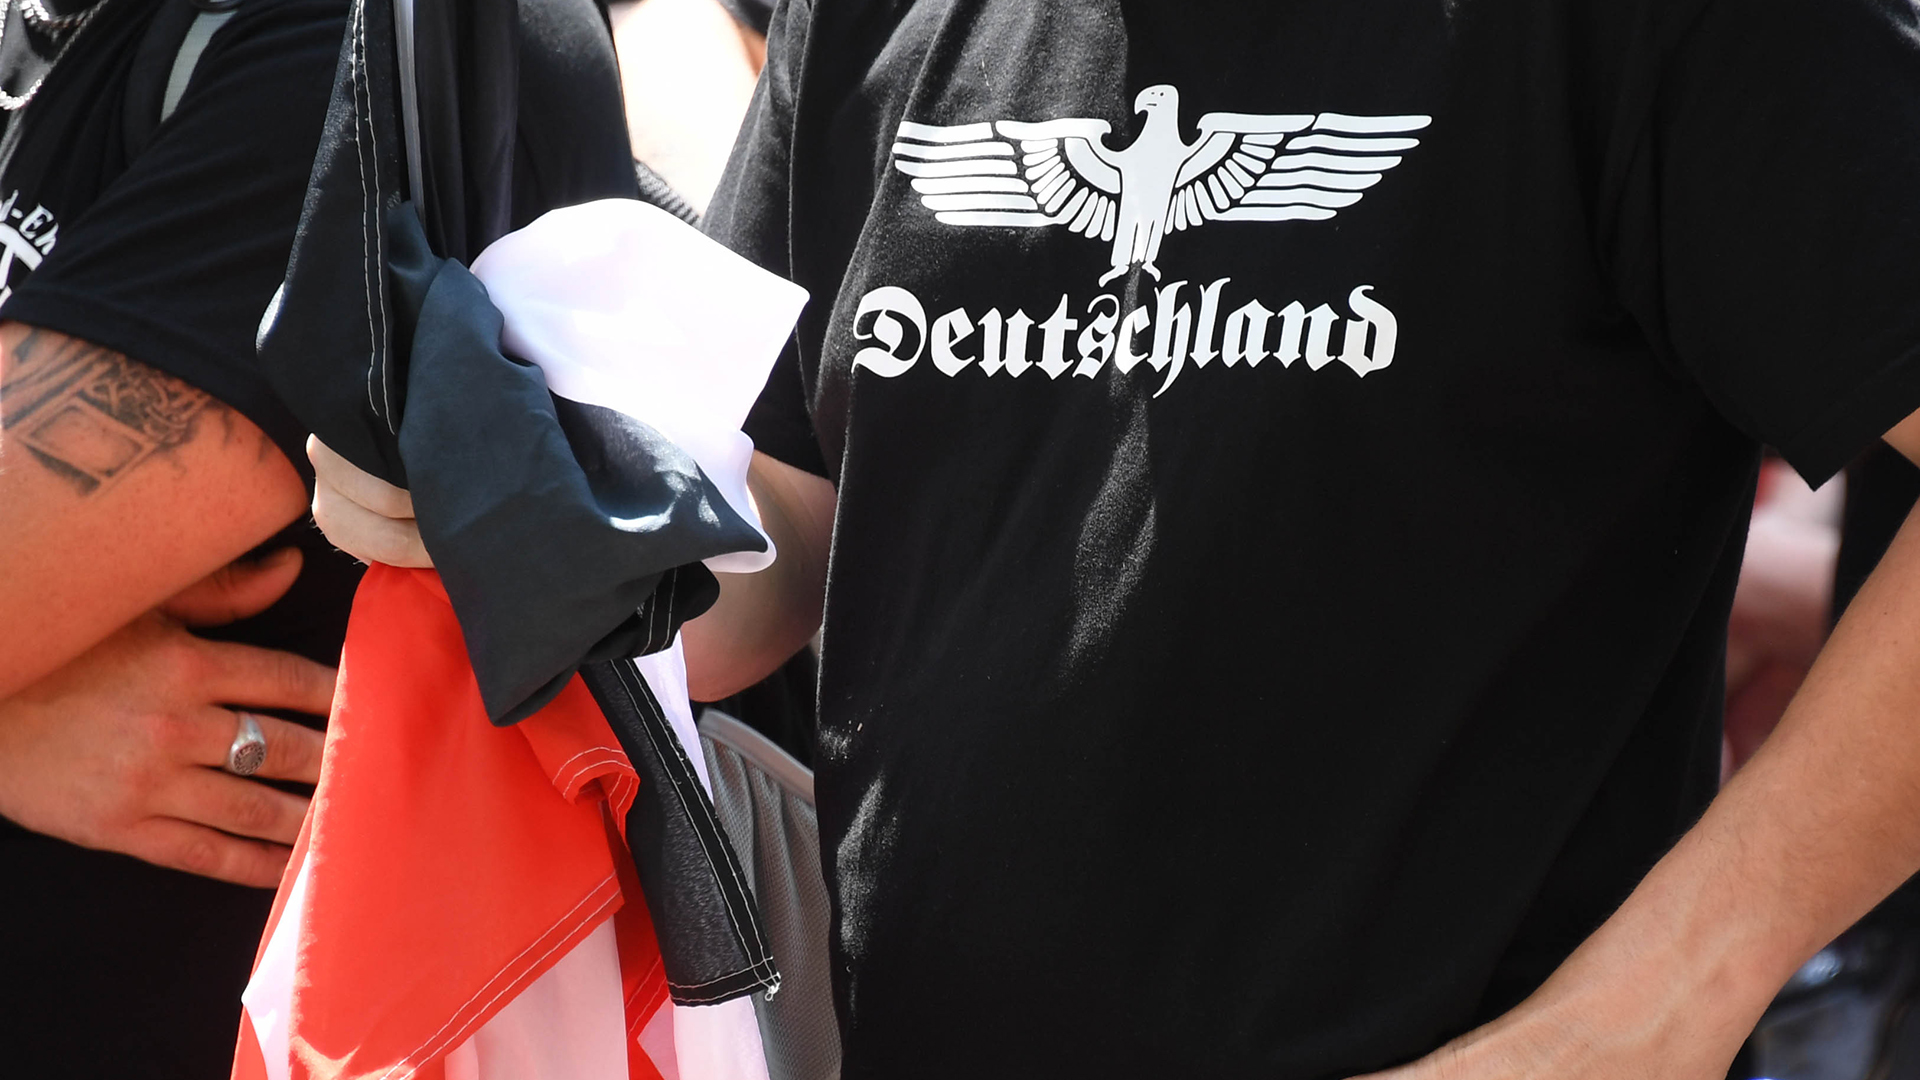 Rechtsextremer mit Deutschlandaufdruck auf Shirt